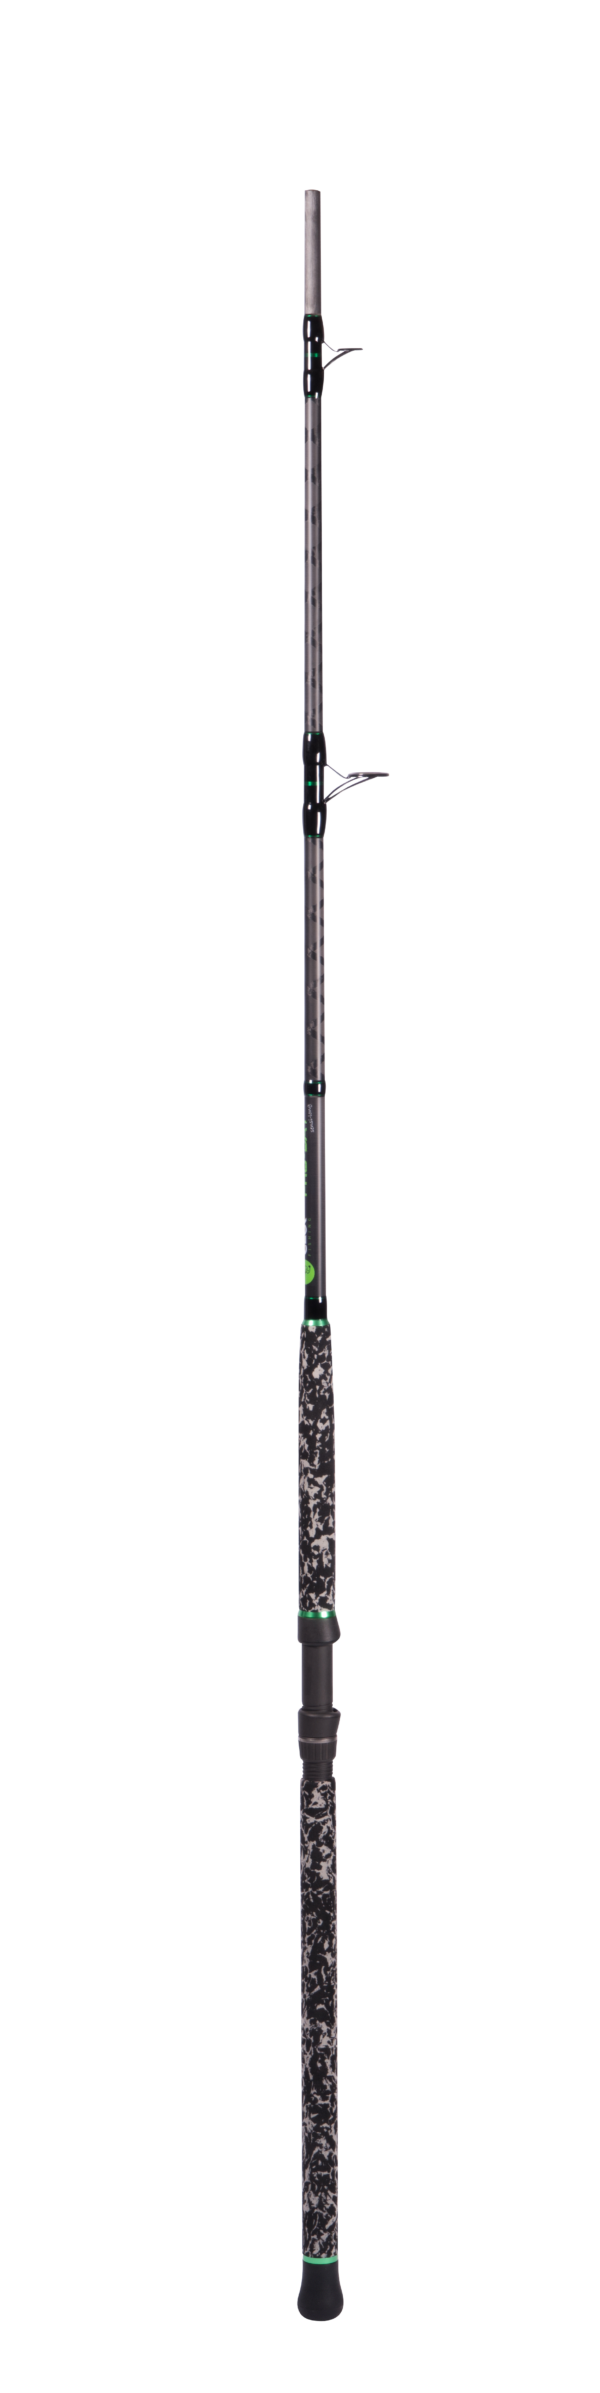 Zeck Pro-Cat sensi-long 320cm |350g